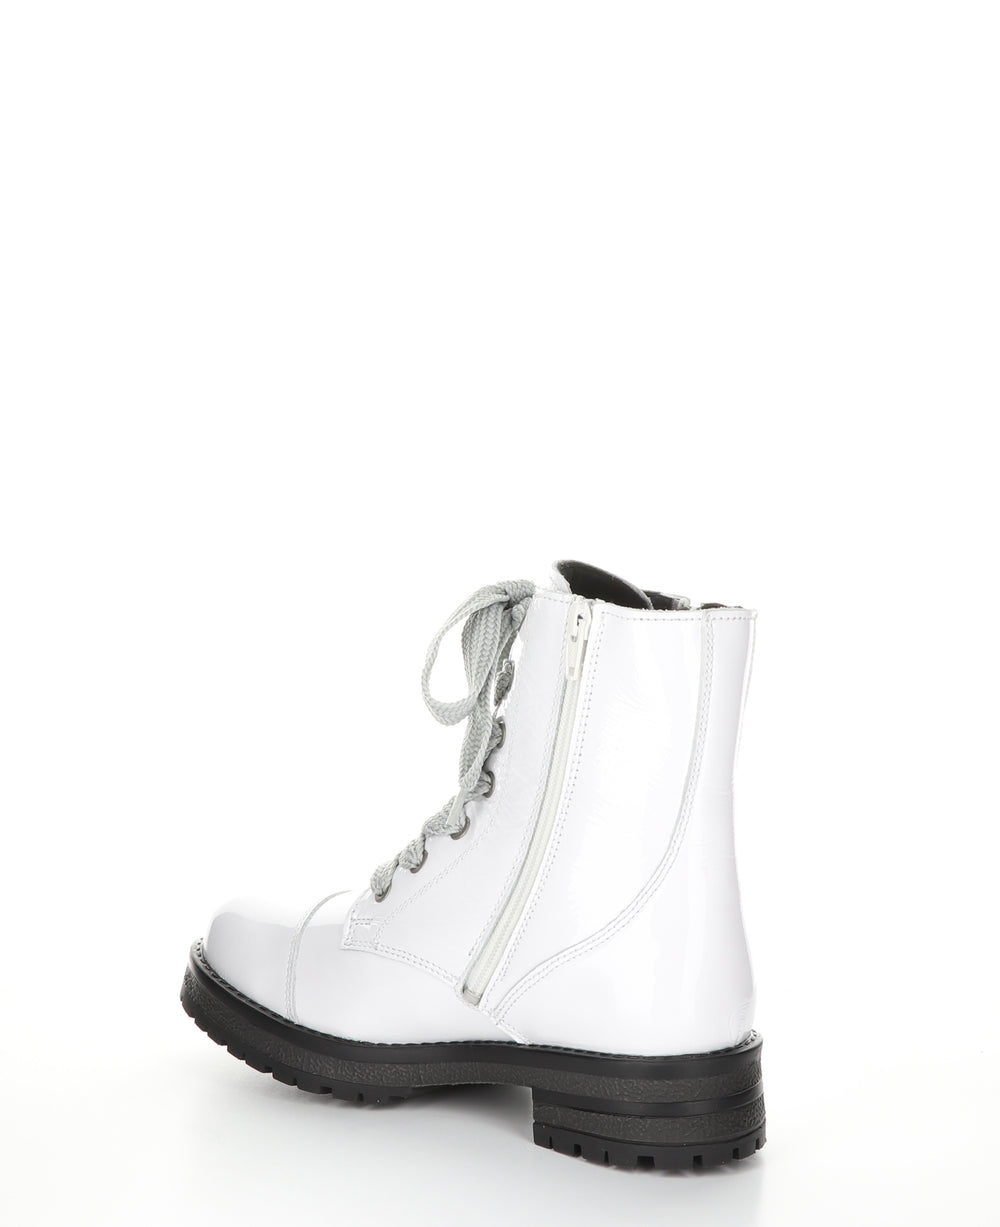 PAULIE White Zip Up Boots|PAULIE Bottes avec Fermeture Zippée in Blanc